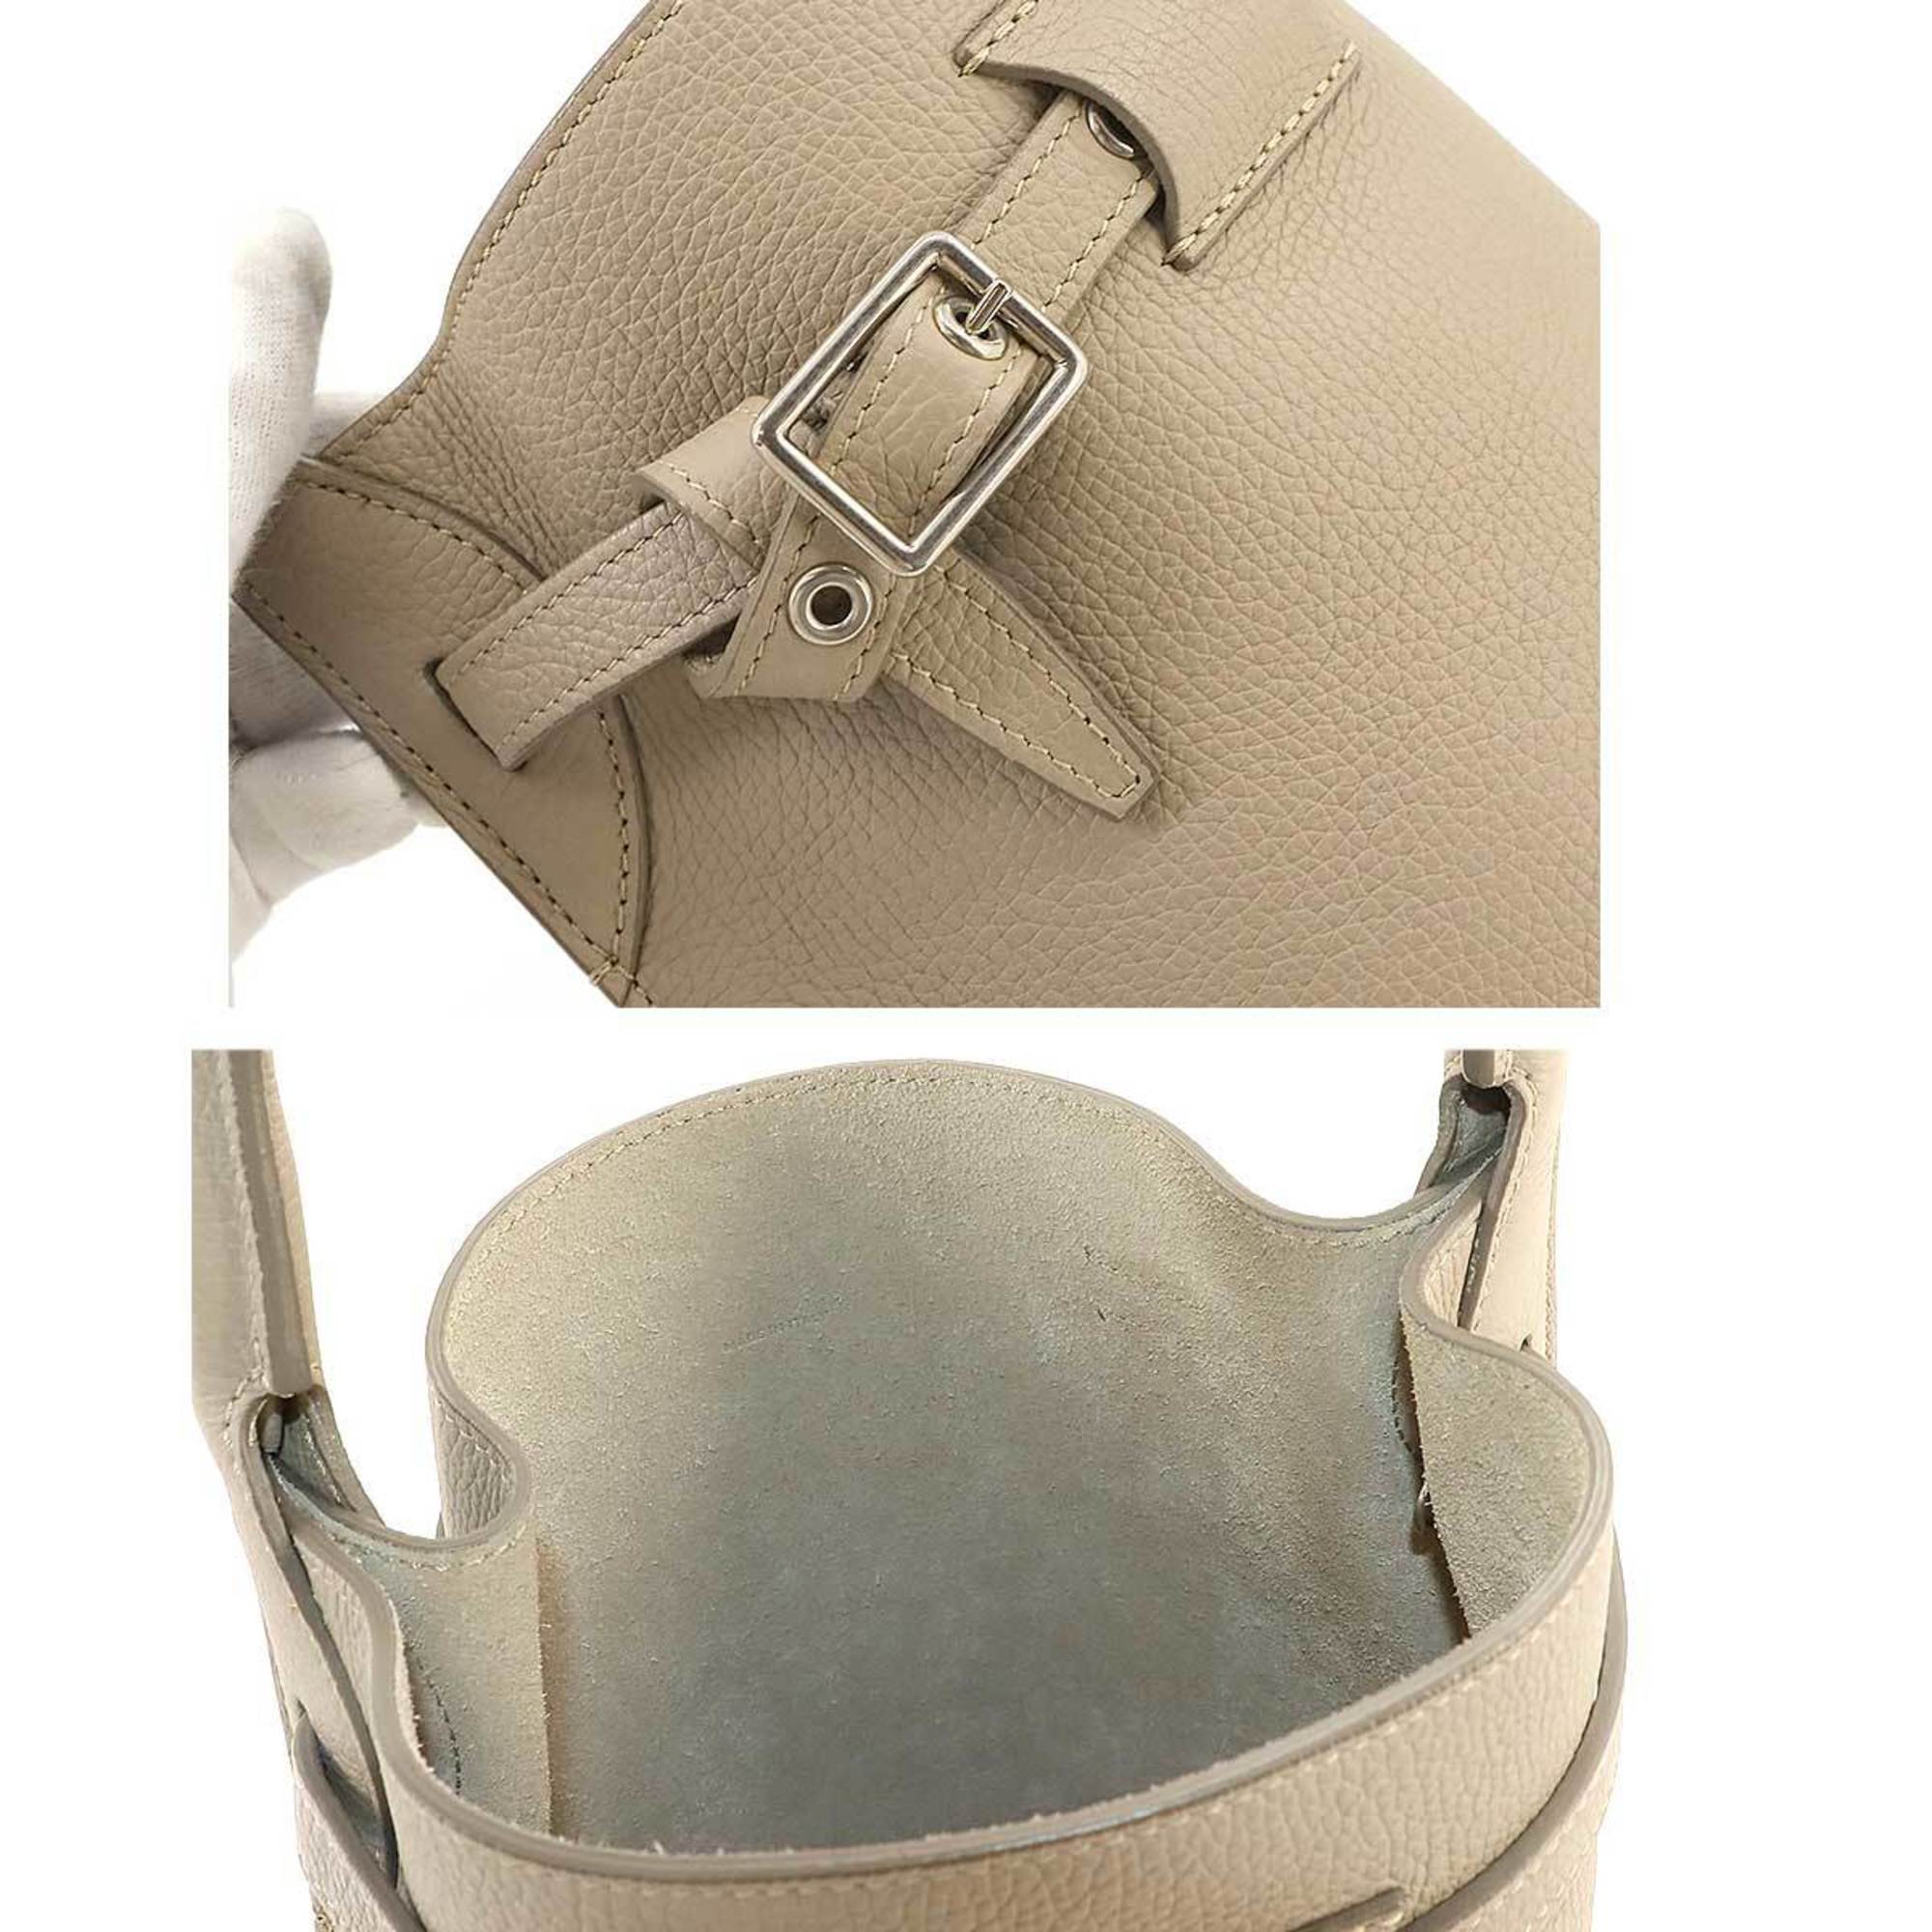 CELINE Big Bag Nano Bucket 2way Hand Shoulder Leather Beige 187243U Silver Hardware